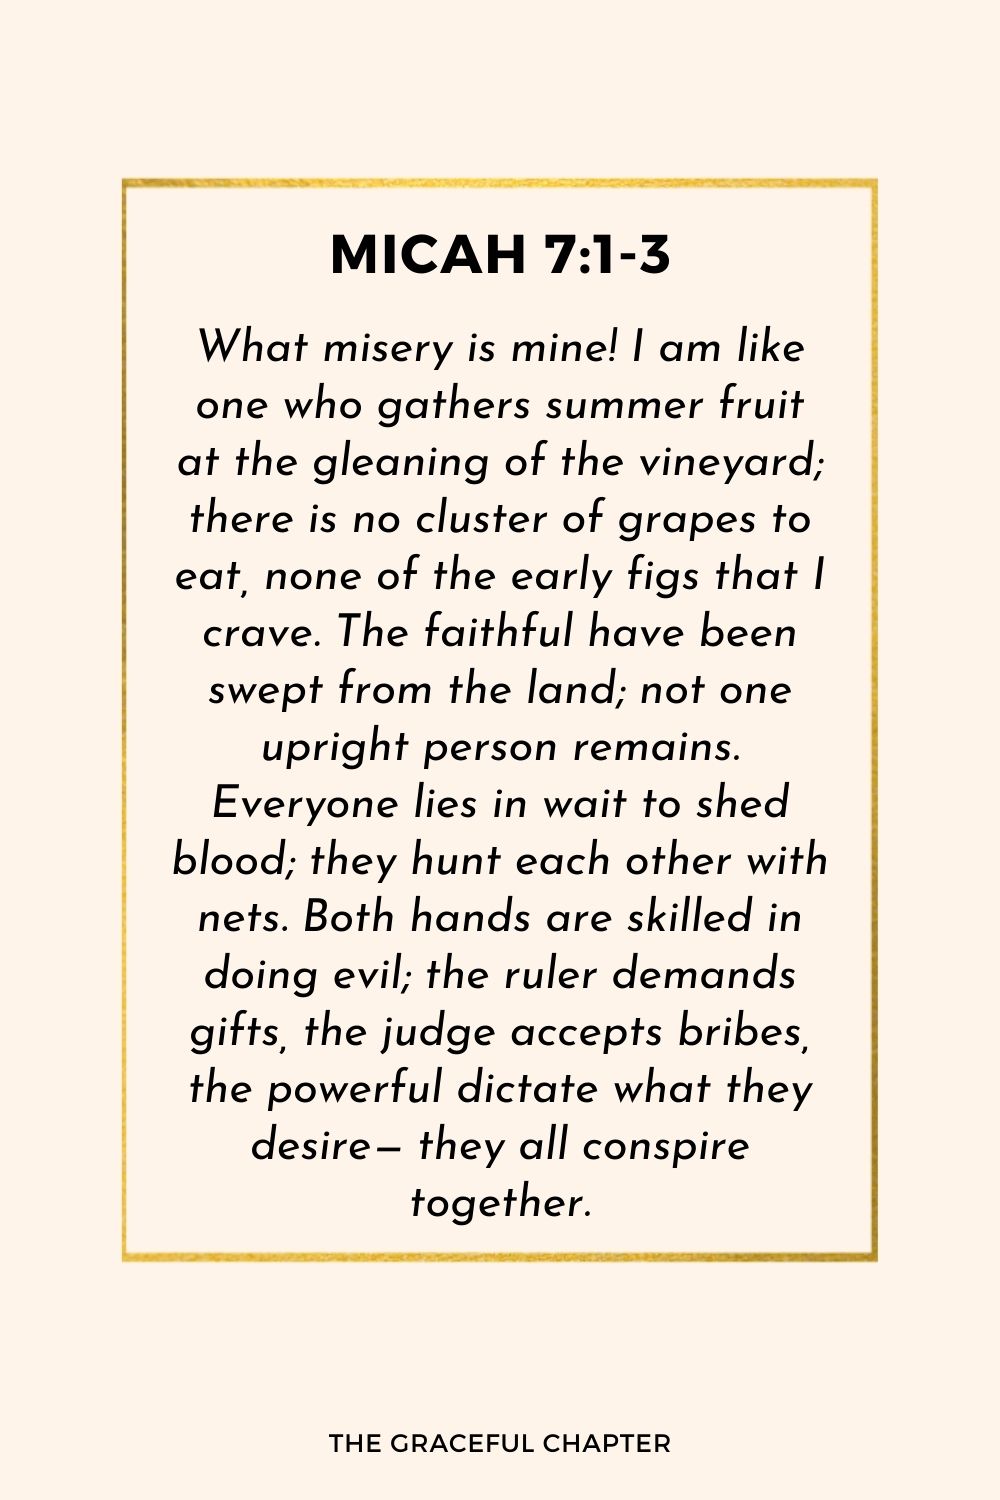 Micah 7:1-3